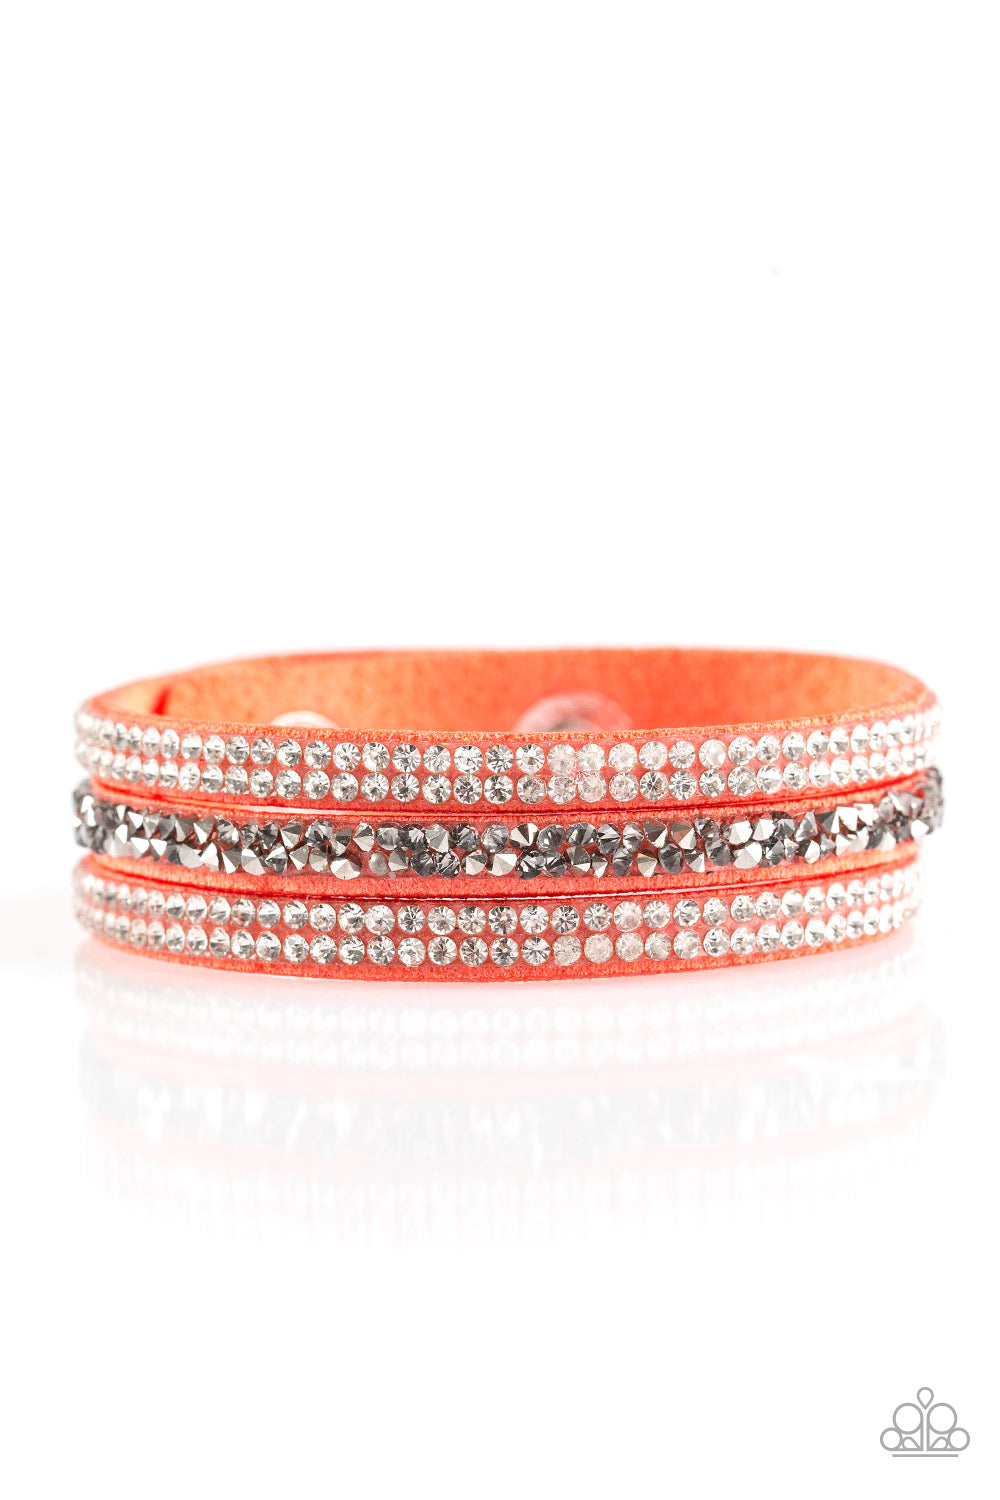 Mega Glam Orange Paparazzi Bracelet Cashmere Pink Jewels - Cashmere Pink Jewels & Accessories, Cashmere Pink Jewels & Accessories - Paparazzi